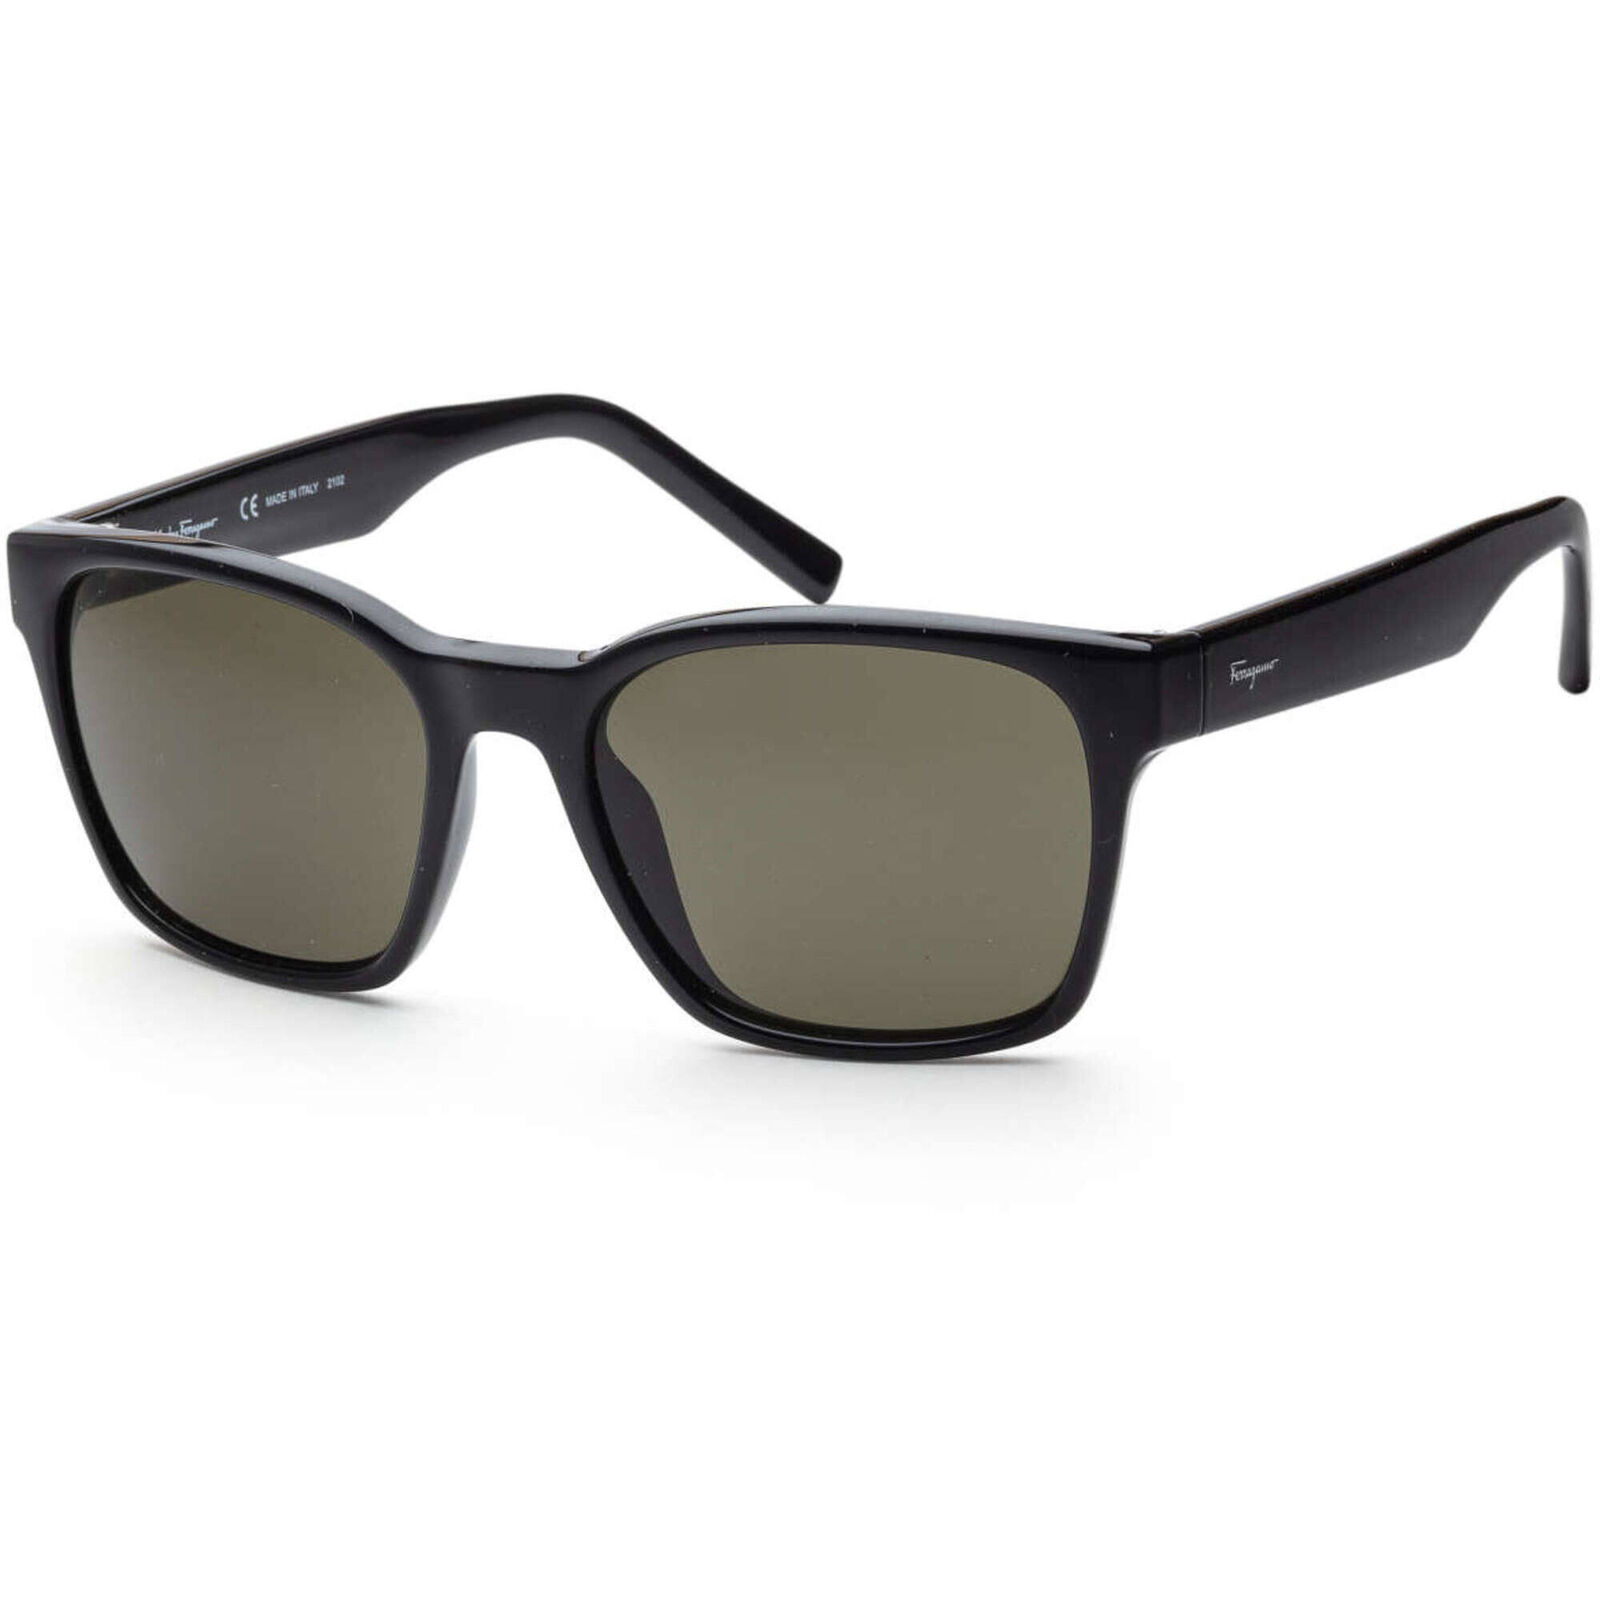 Salvatore Ferragamo Men\'s Sunglasses Black Frame SALVATORE FERRAGAMO SF959S 1